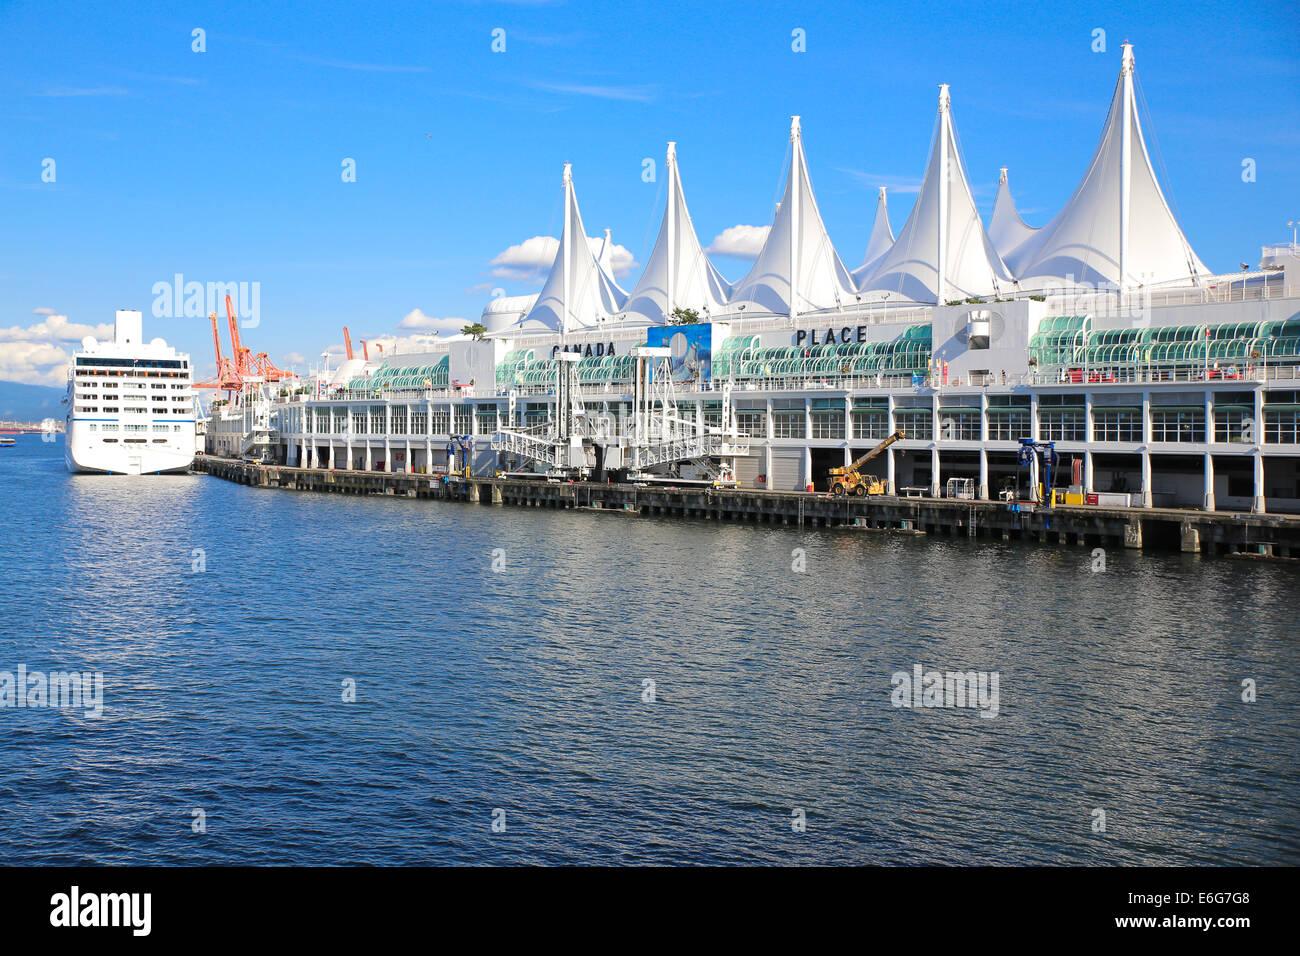 Canada Place ist ein Gebäude an der Burrard Inlet Uferpromenade von Vancouver, Britisch-Kolumbien. Stockfoto